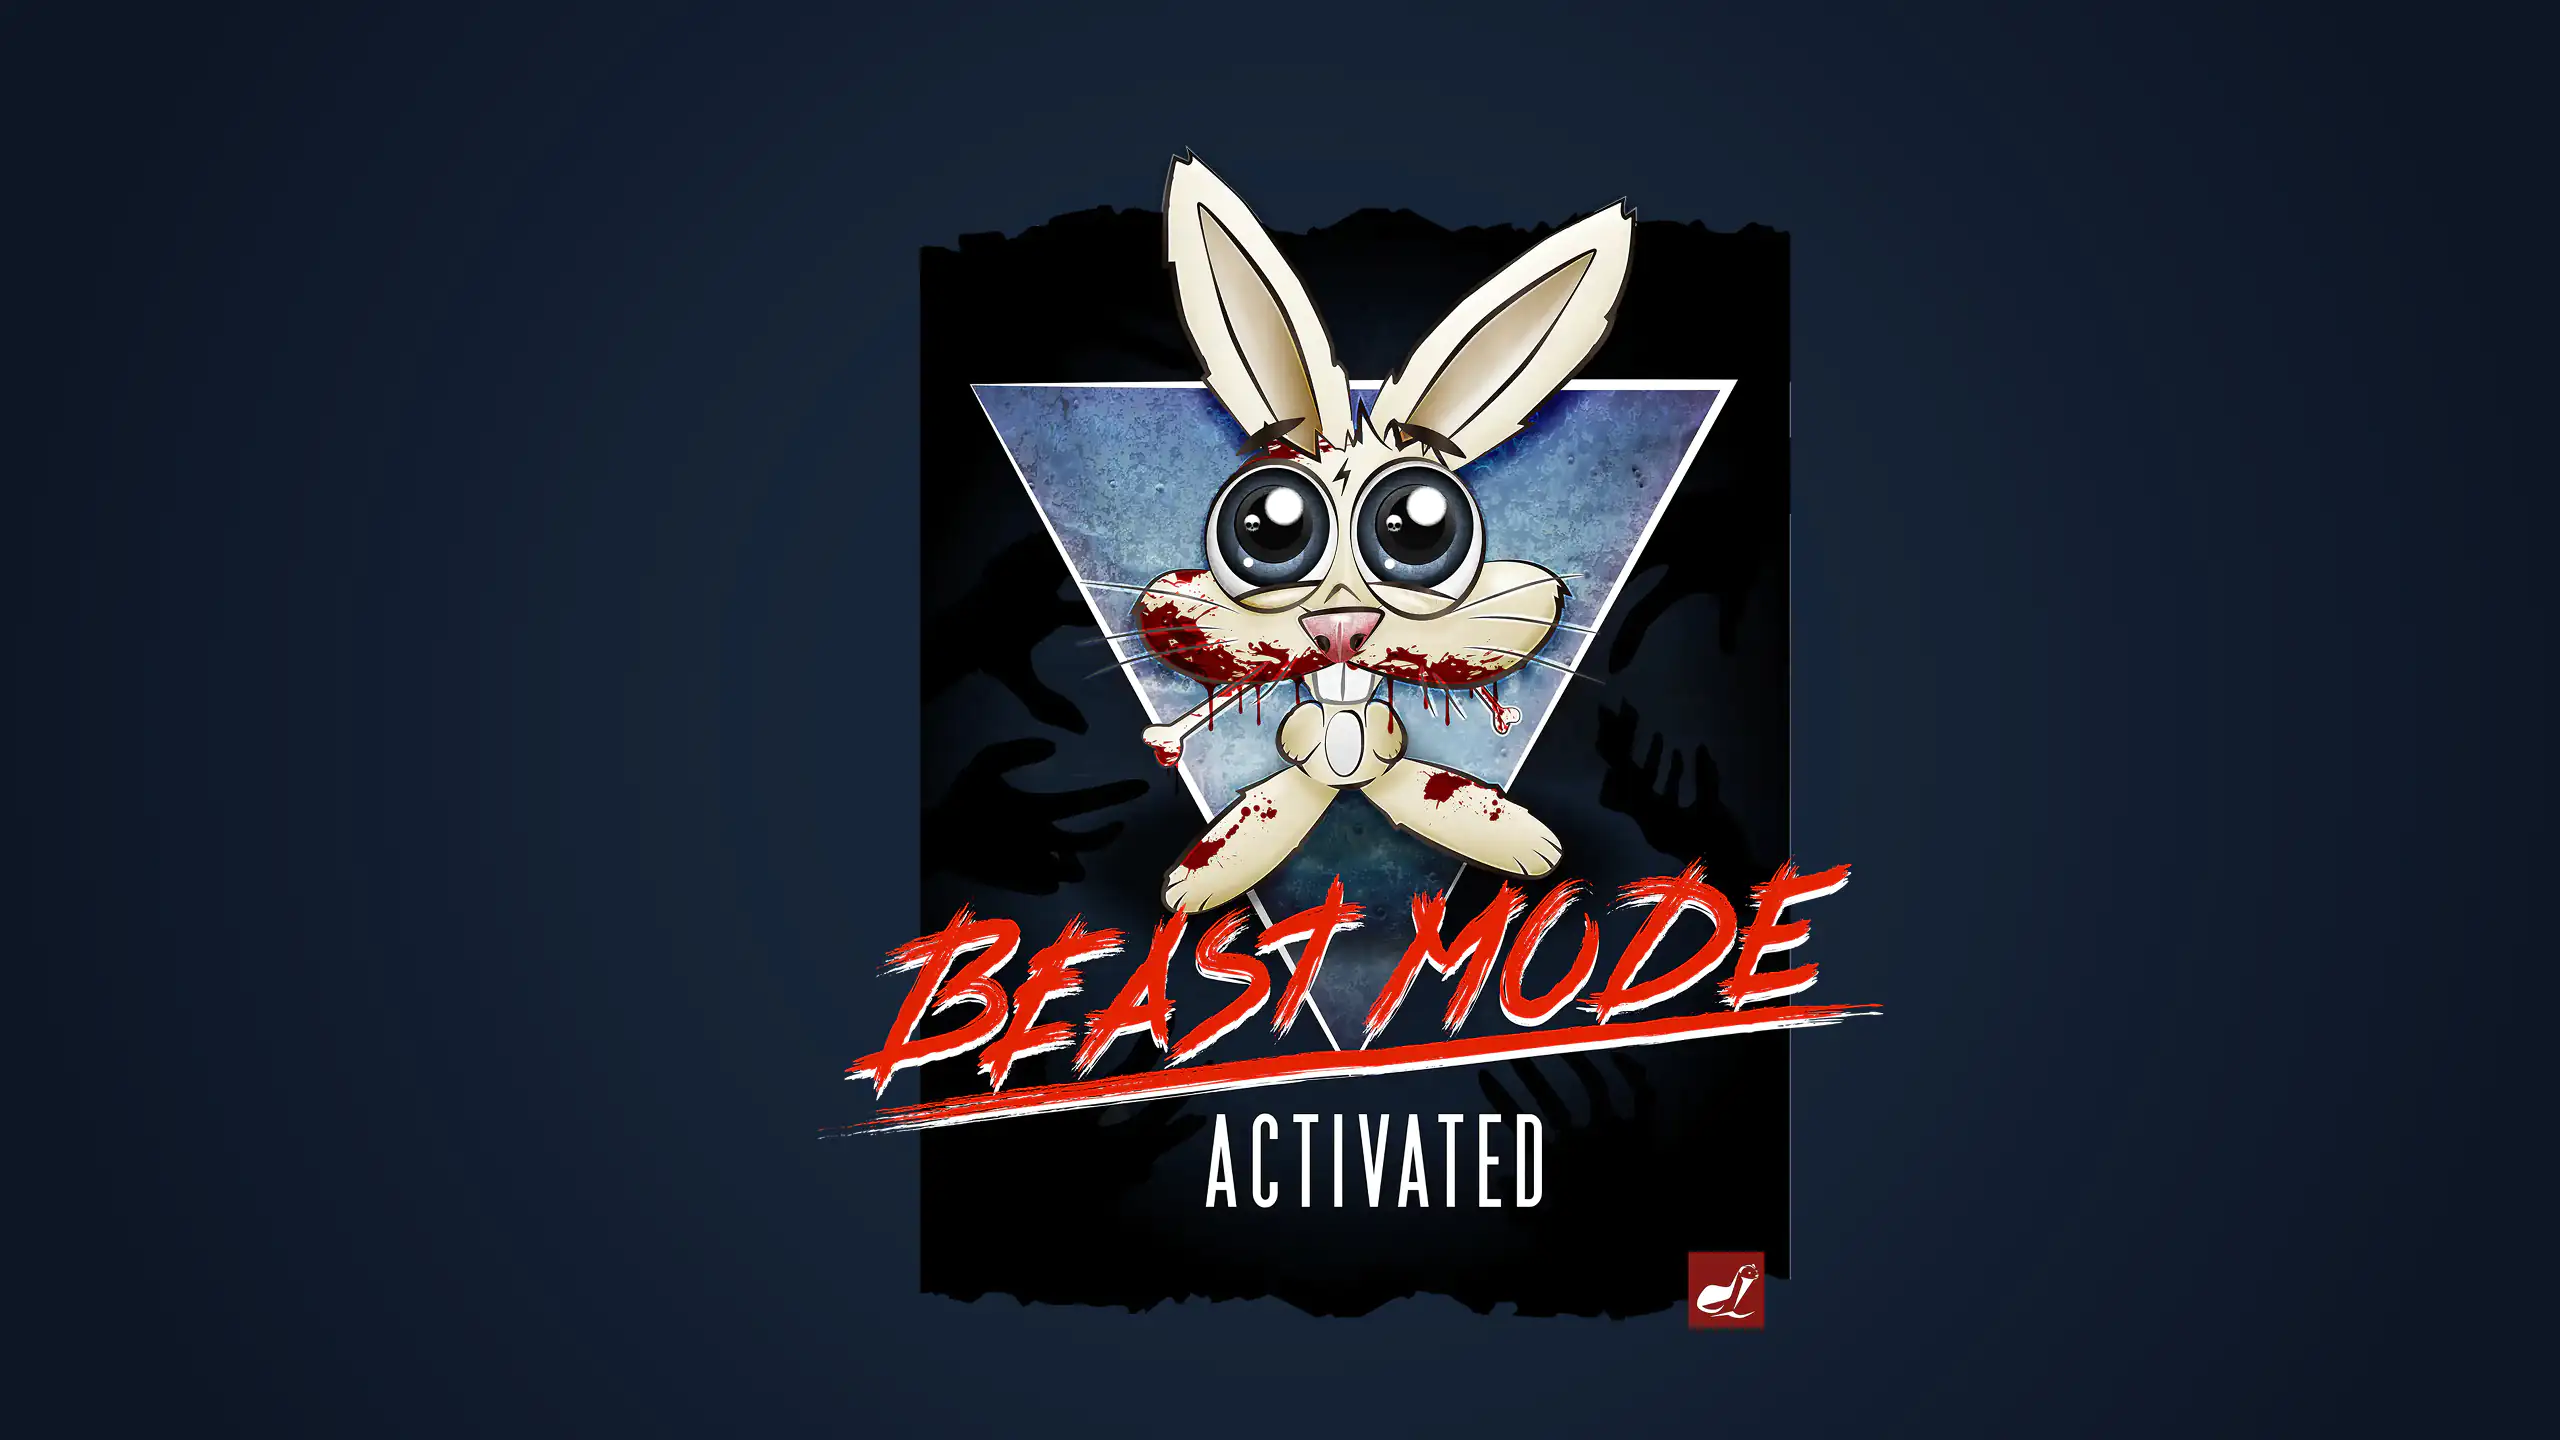 Grafik mit blutrünstigen Hasen mit dem Titel "Beast Mode Activated" auf dunkelblauem Hintergrund